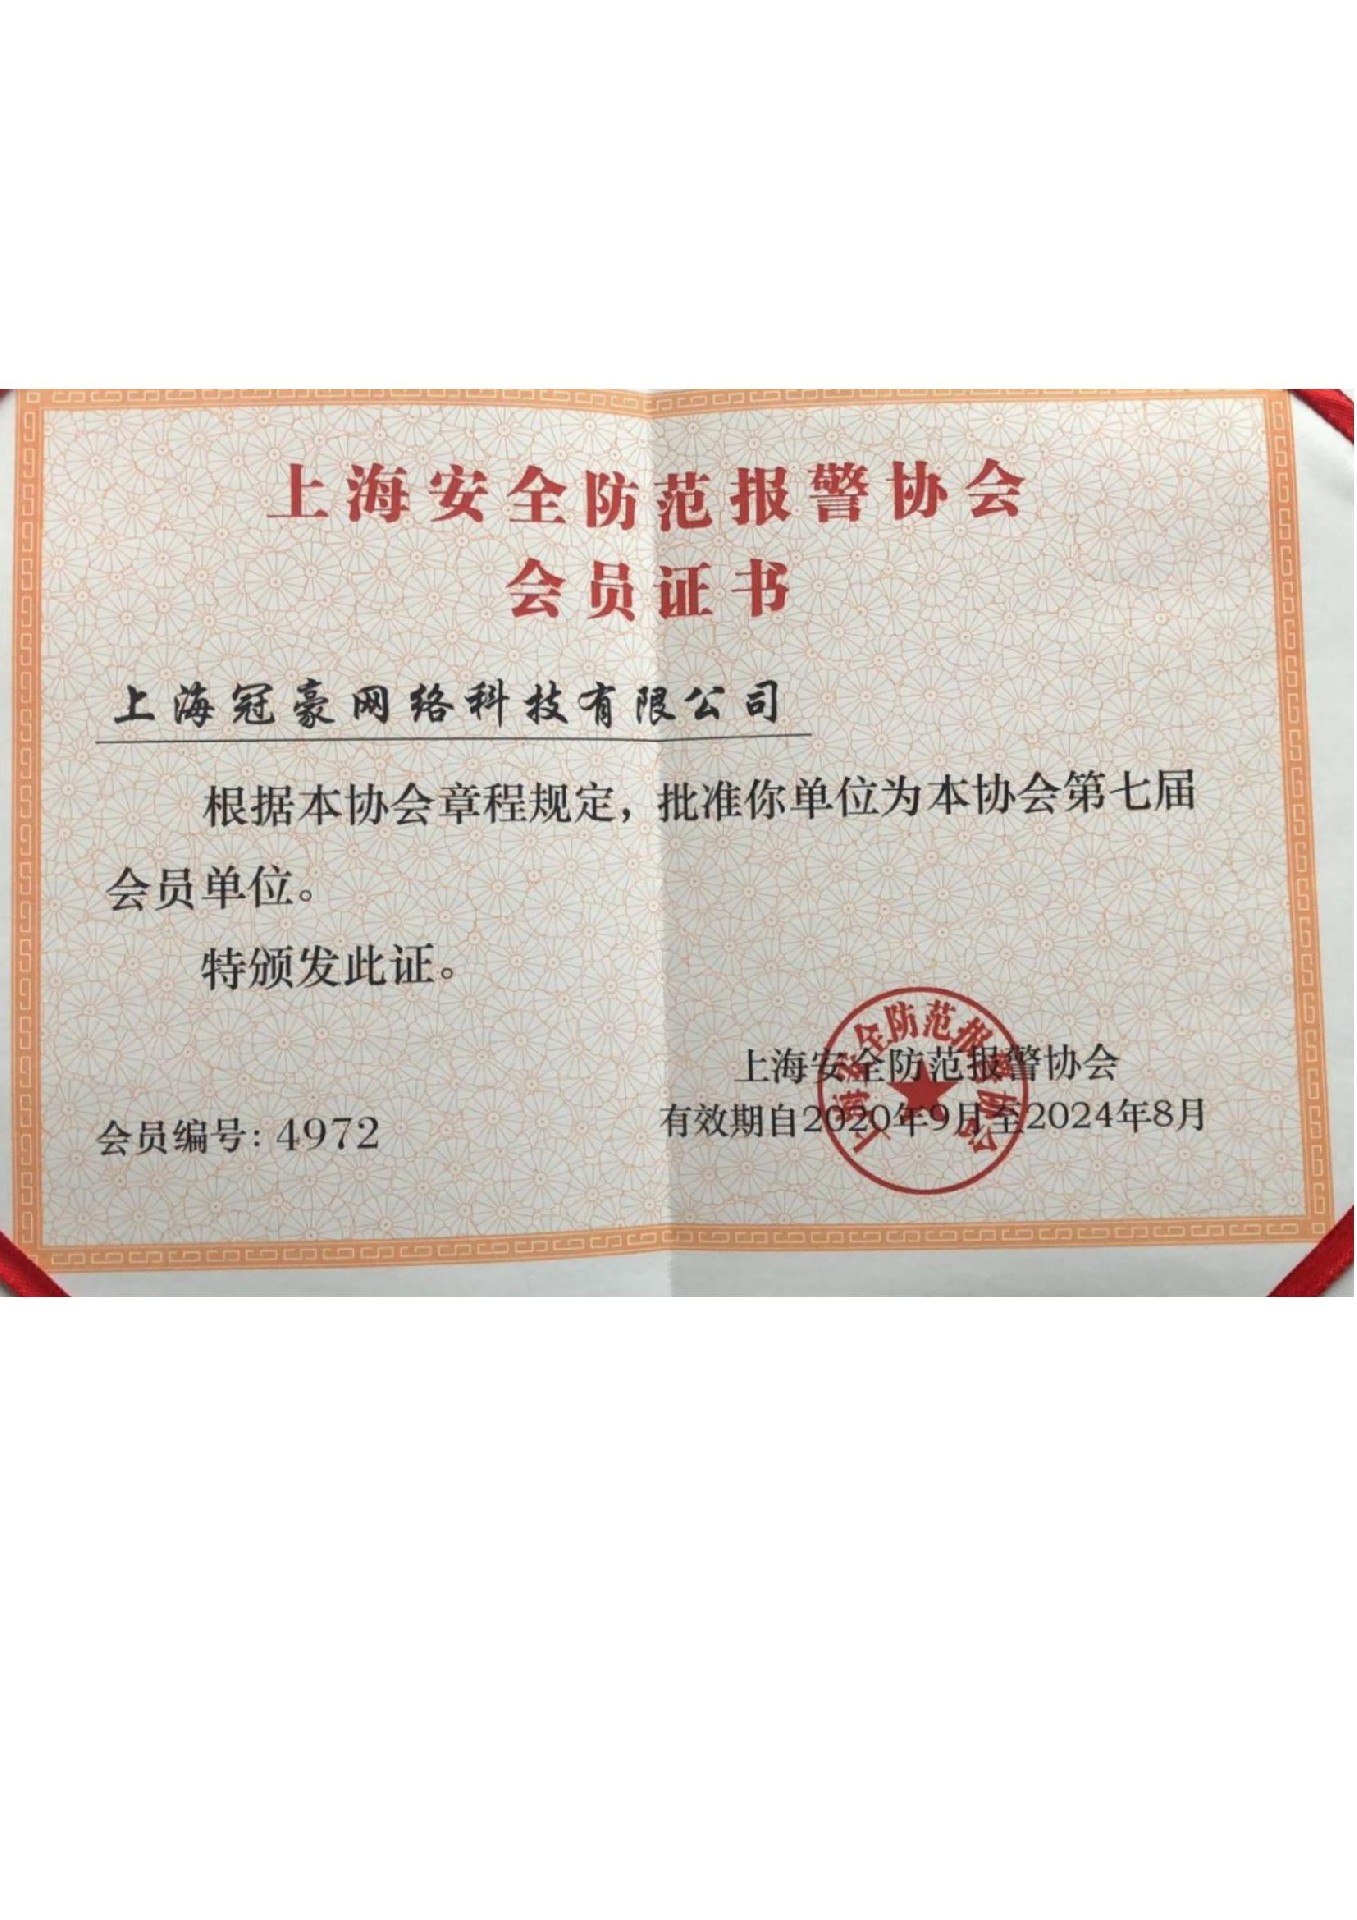 上海安全防范报警协会会员证书